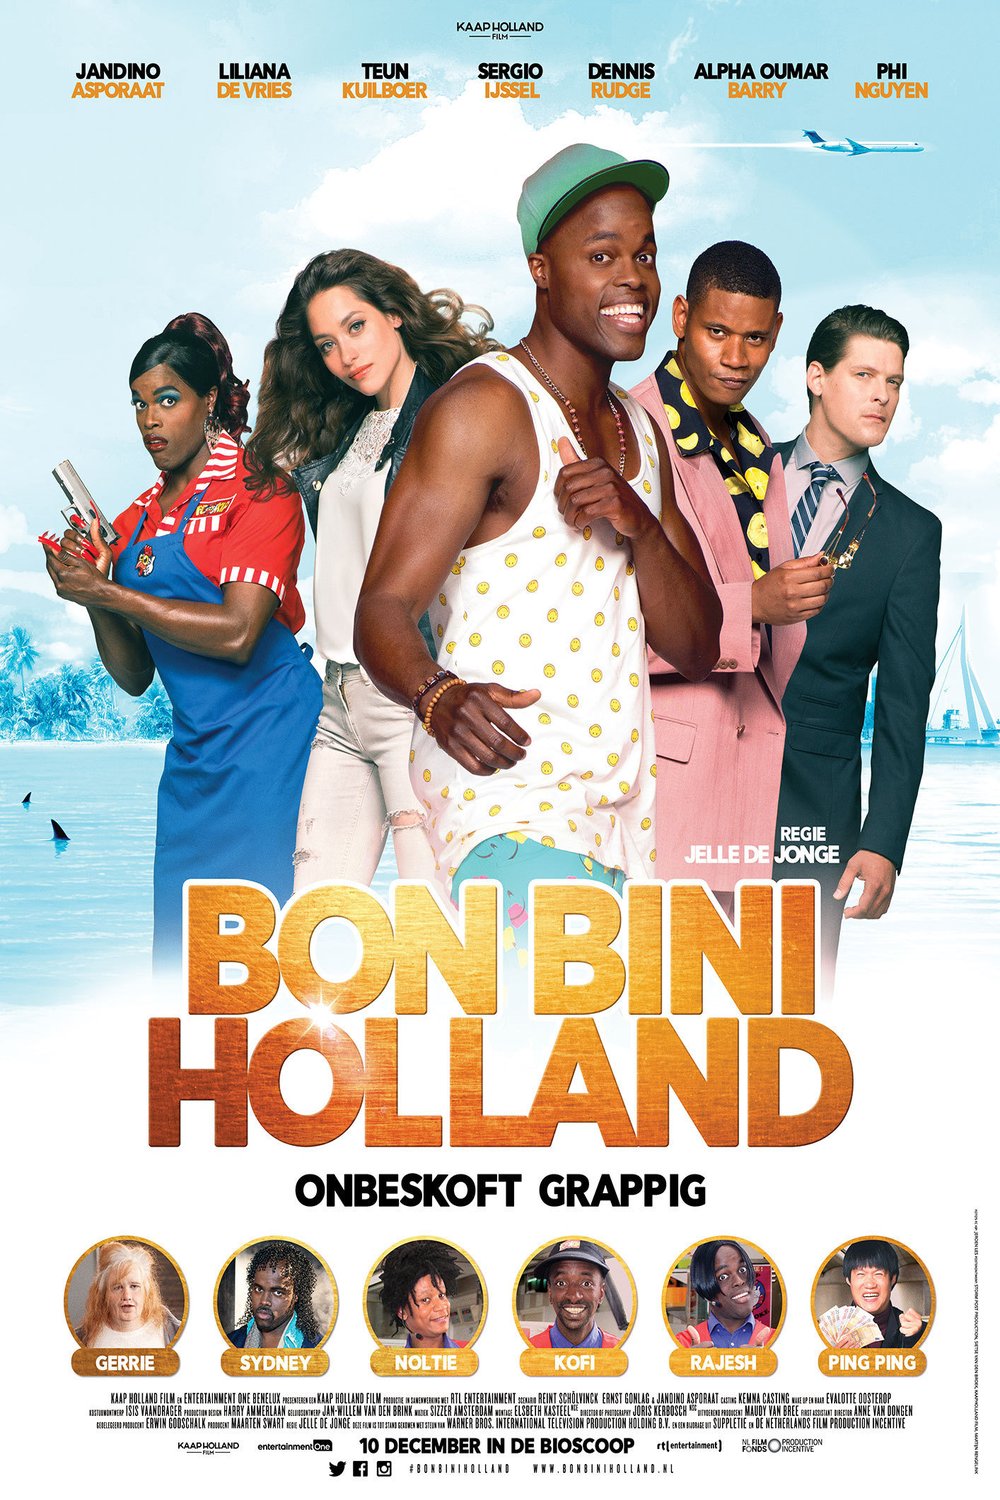 L'affiche originale du film Bon Bini Holland en Néerlandais